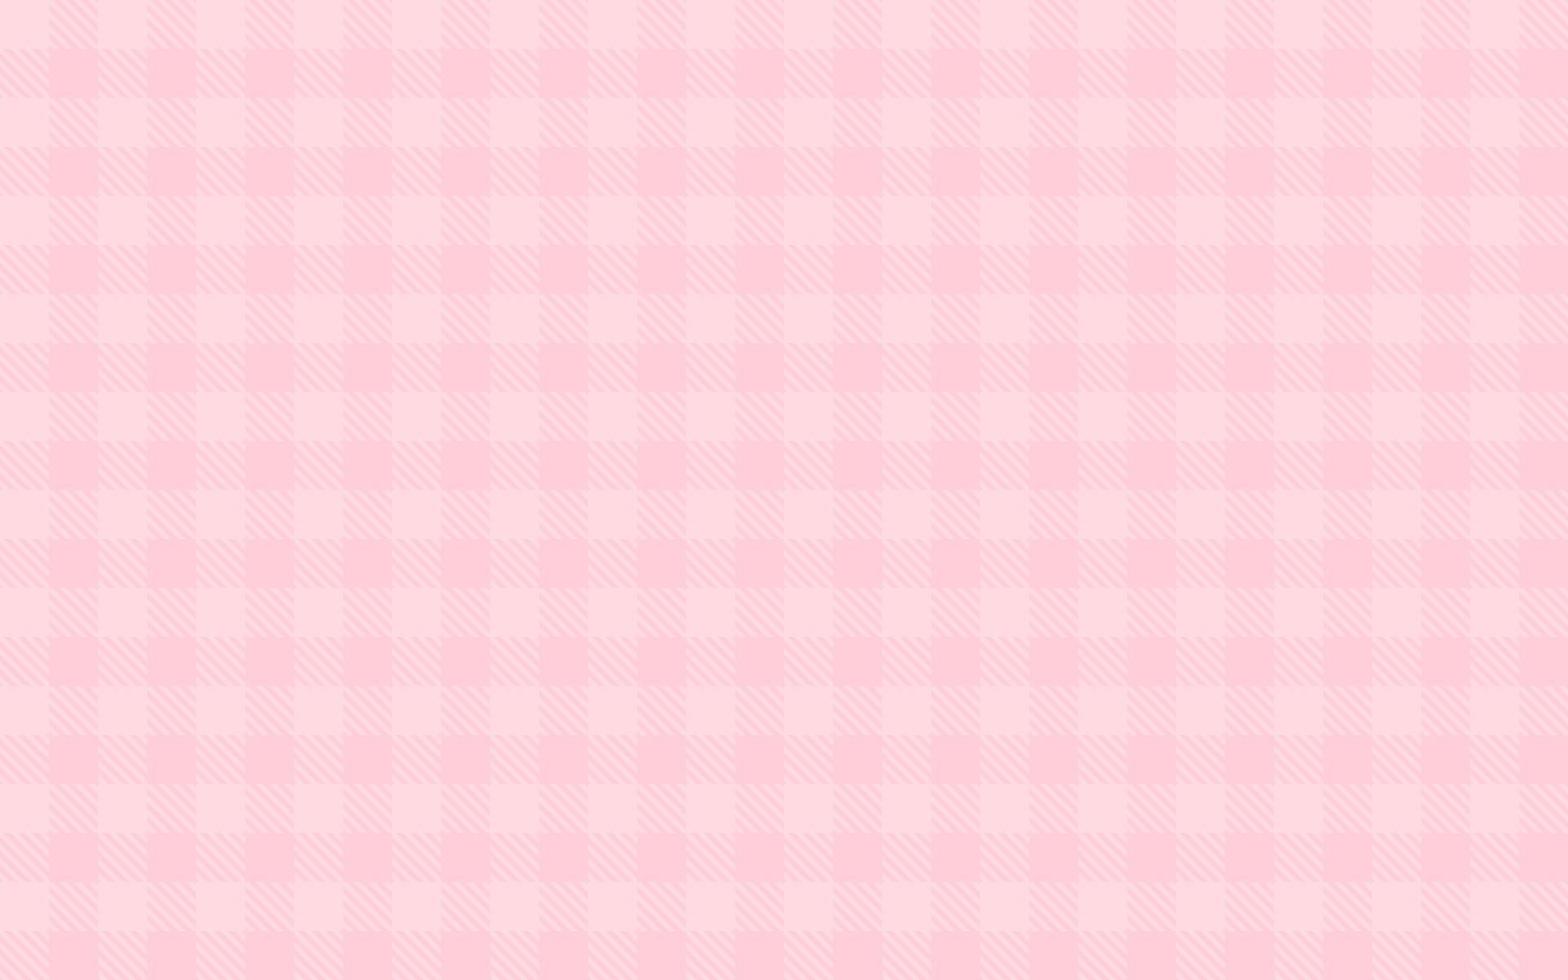 diseño de cuadros de búfalo de fondo rosa. ilustración vectorial eps10 vector